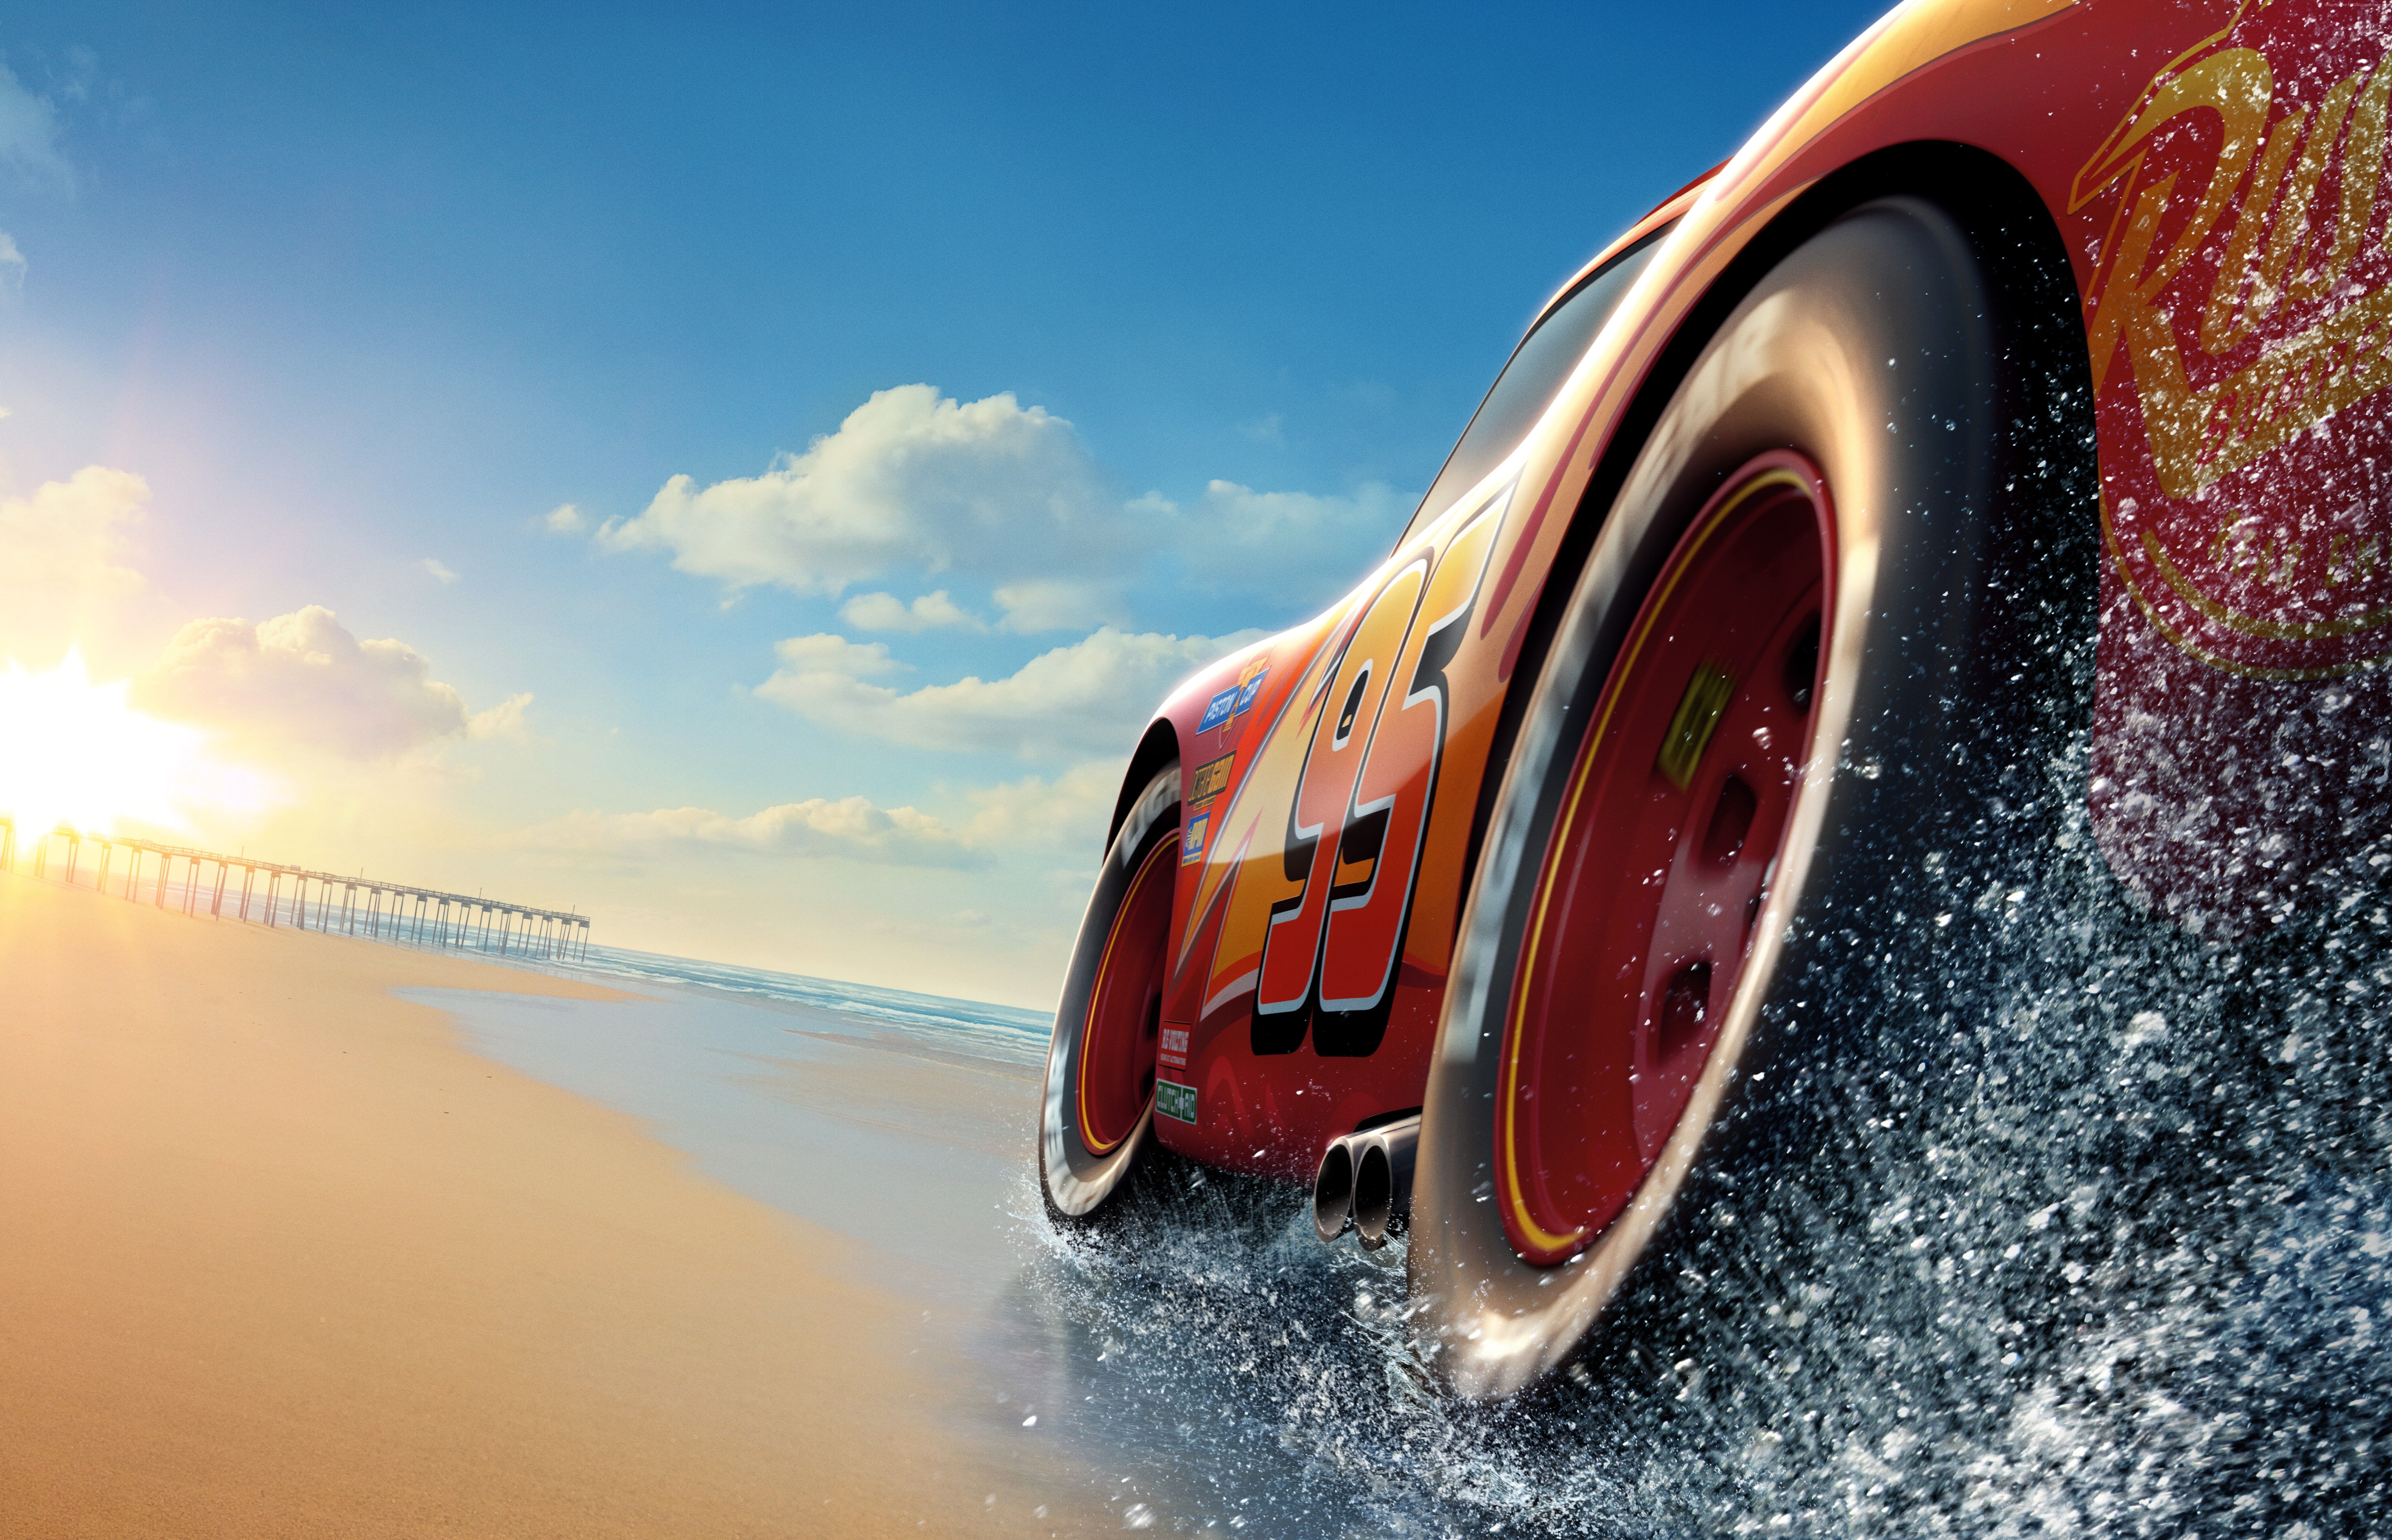 5k k k Lightning McQueen #poster Cars 3 K #wallpaper #hdwallpaper #desktop. Disney cars wallpaper, Car animation, Cars movie